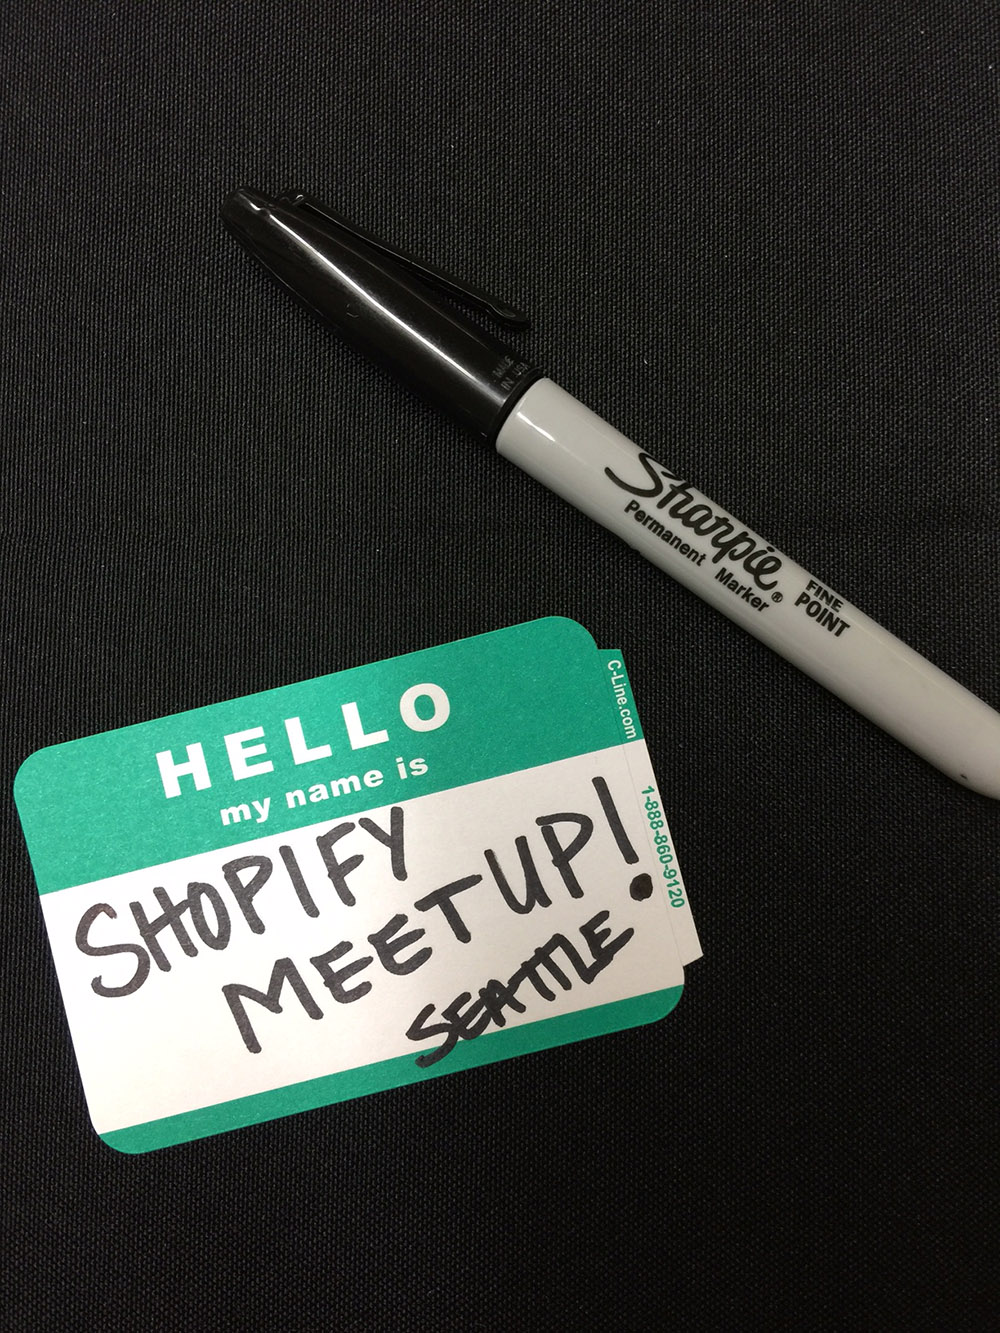 Shopify Seattle Meetup